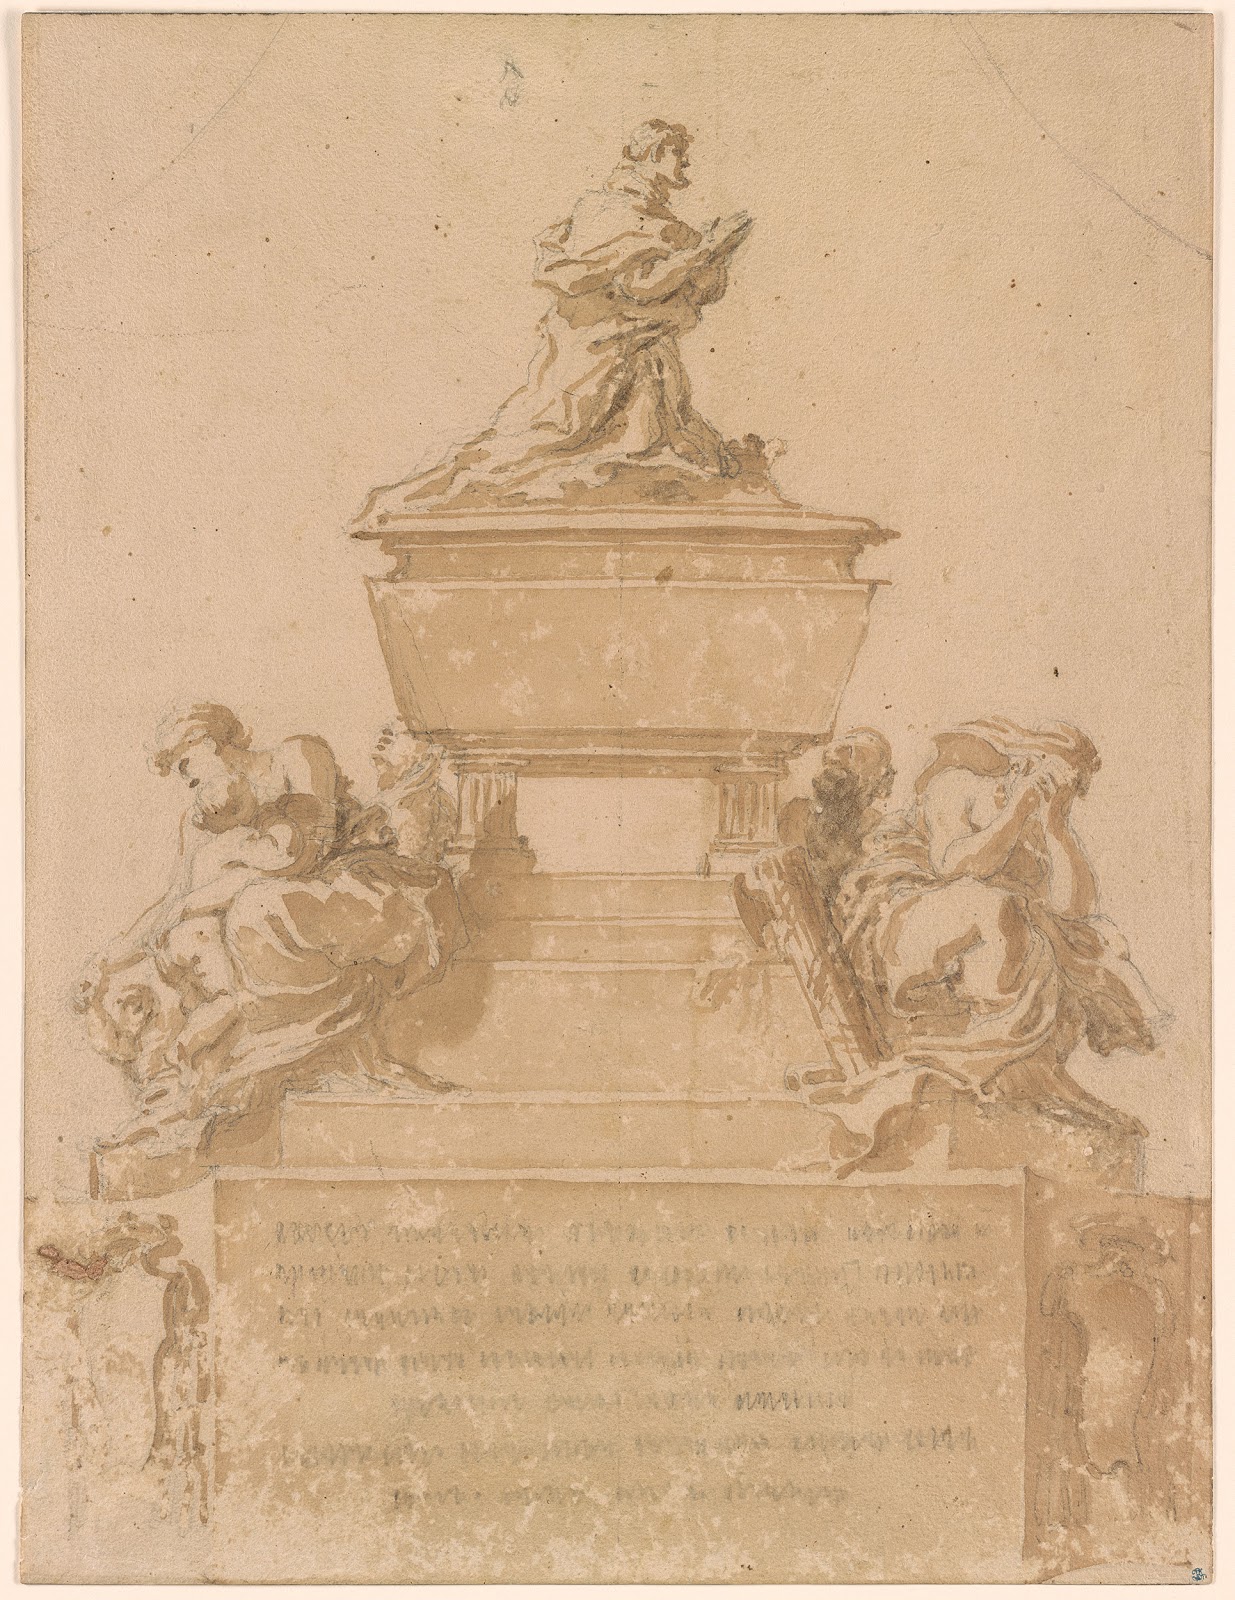 Gian+Lorenzo+Bernini-1598-1680 (128).jpg